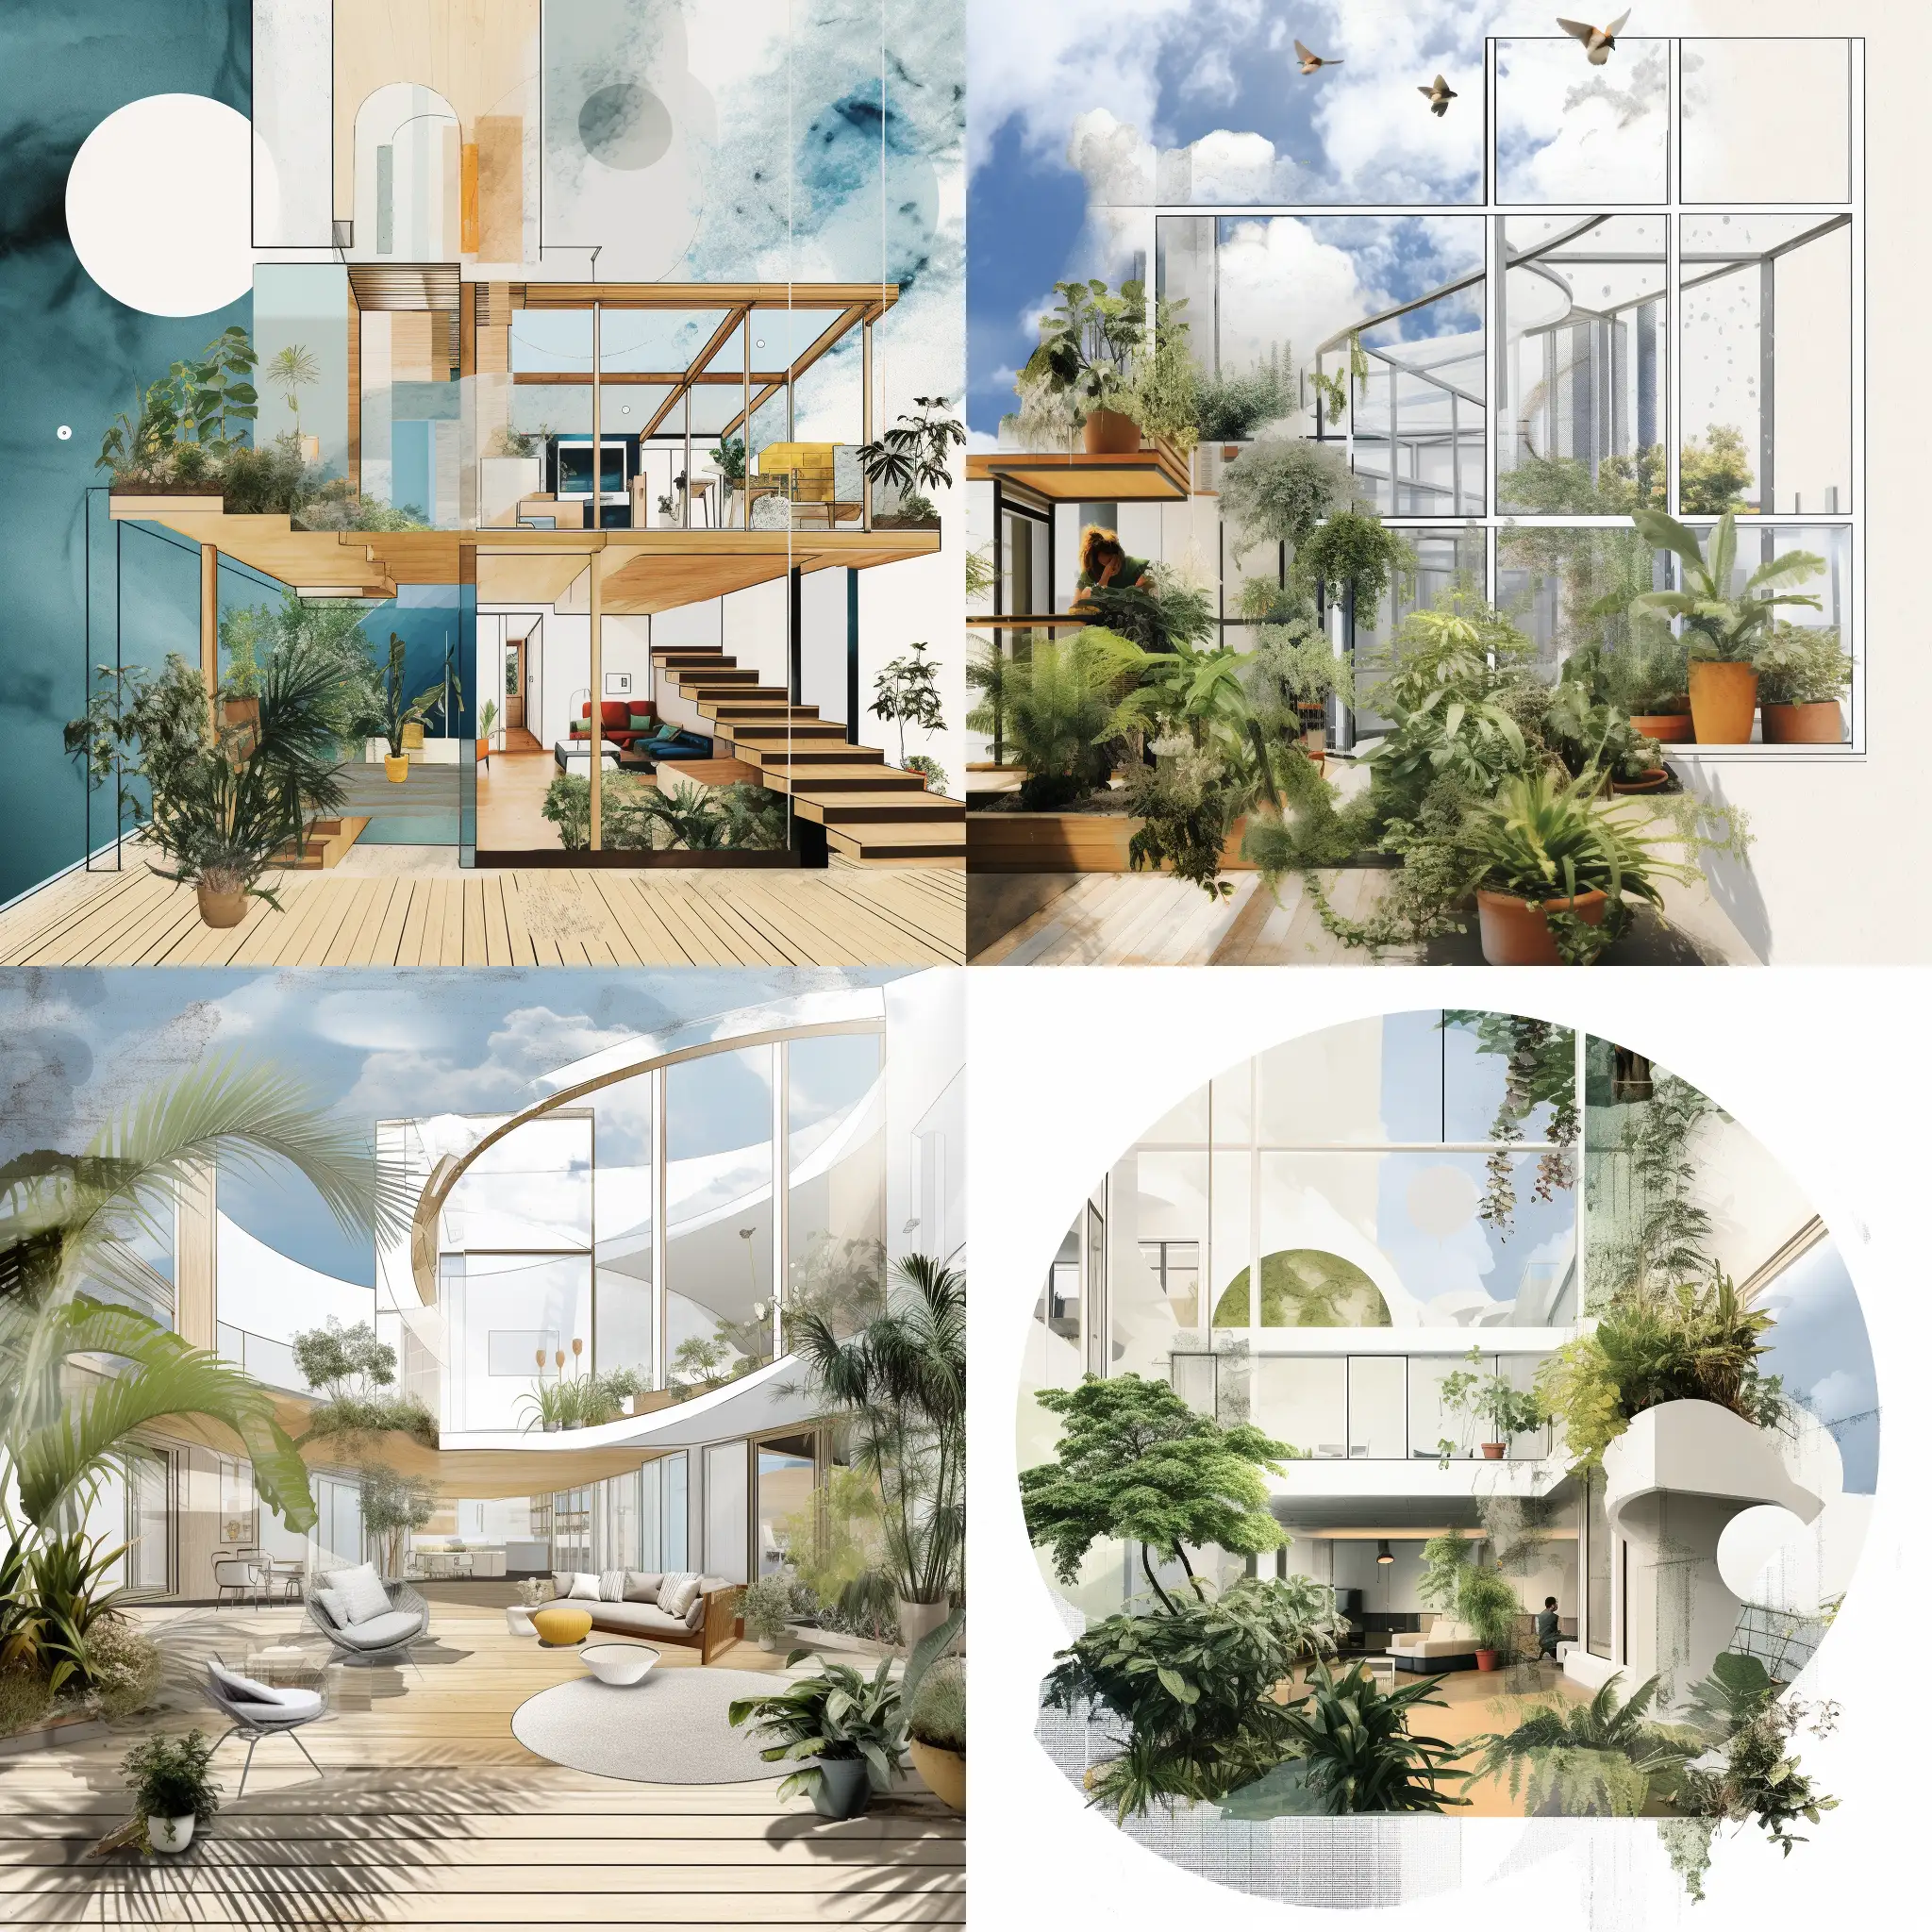 Rehabilitation-Centre-Design-Open-Sky-Atrium-with-Healing-Plants-and-Safe-Hospital-Concept